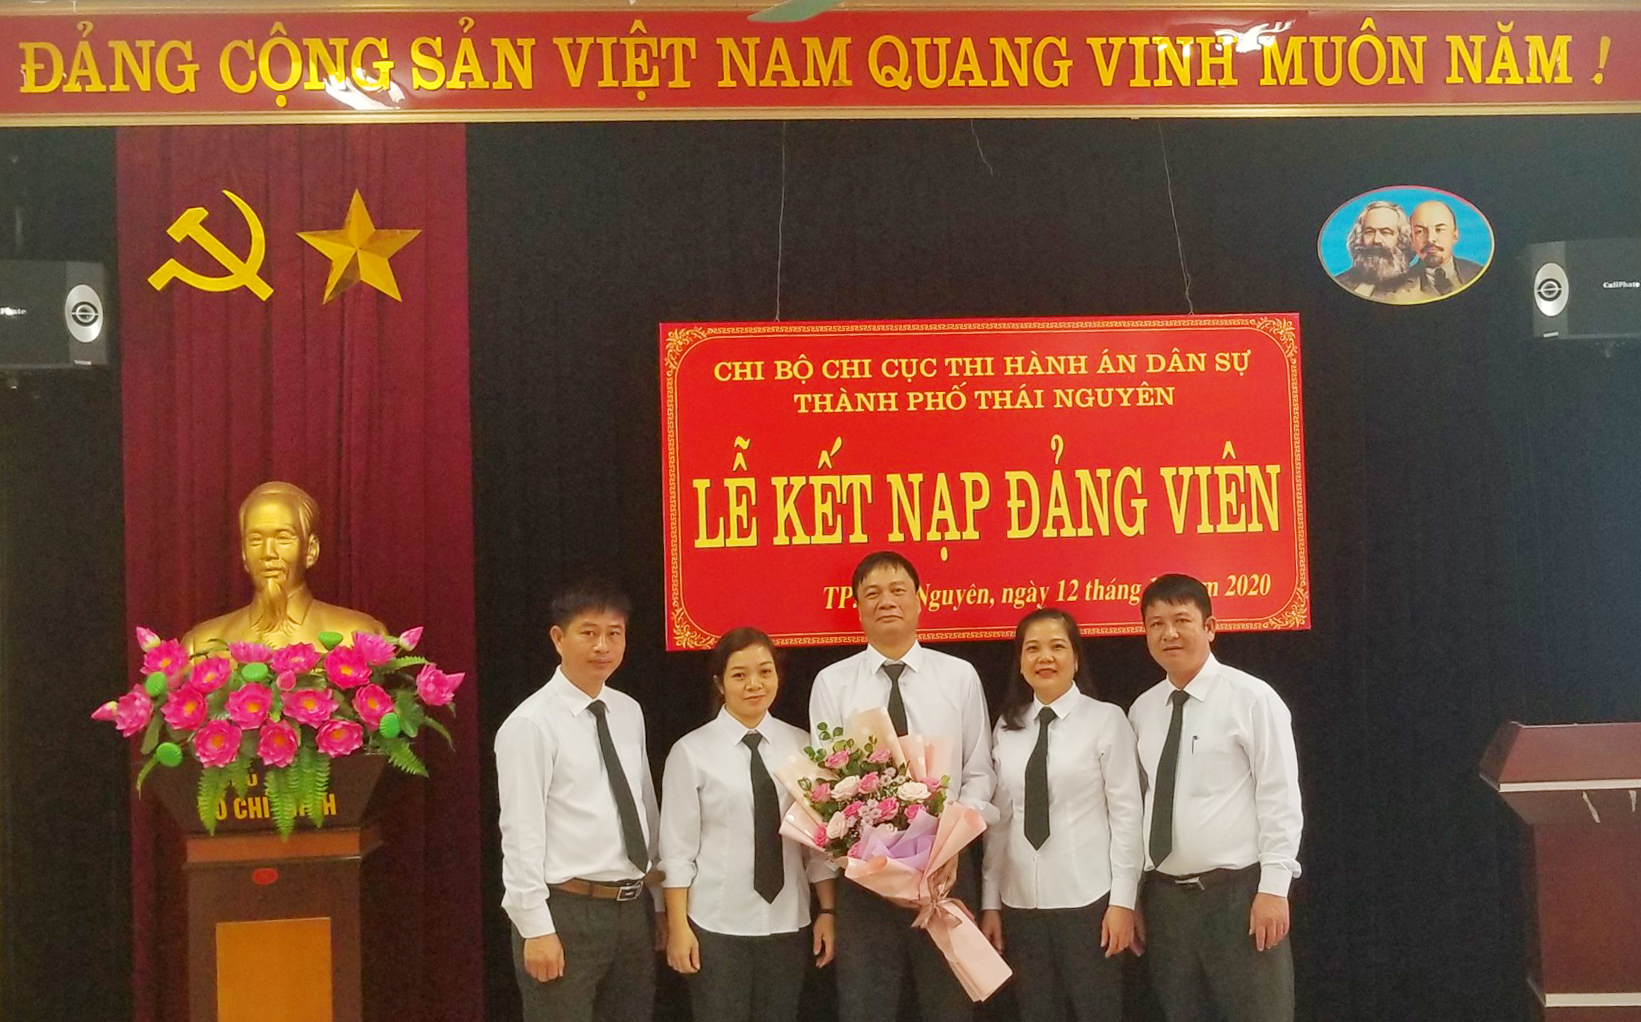 Chi bộ Chi cục THADS TP Thái Nguyên tổ chức Lễ kết nạp đảng